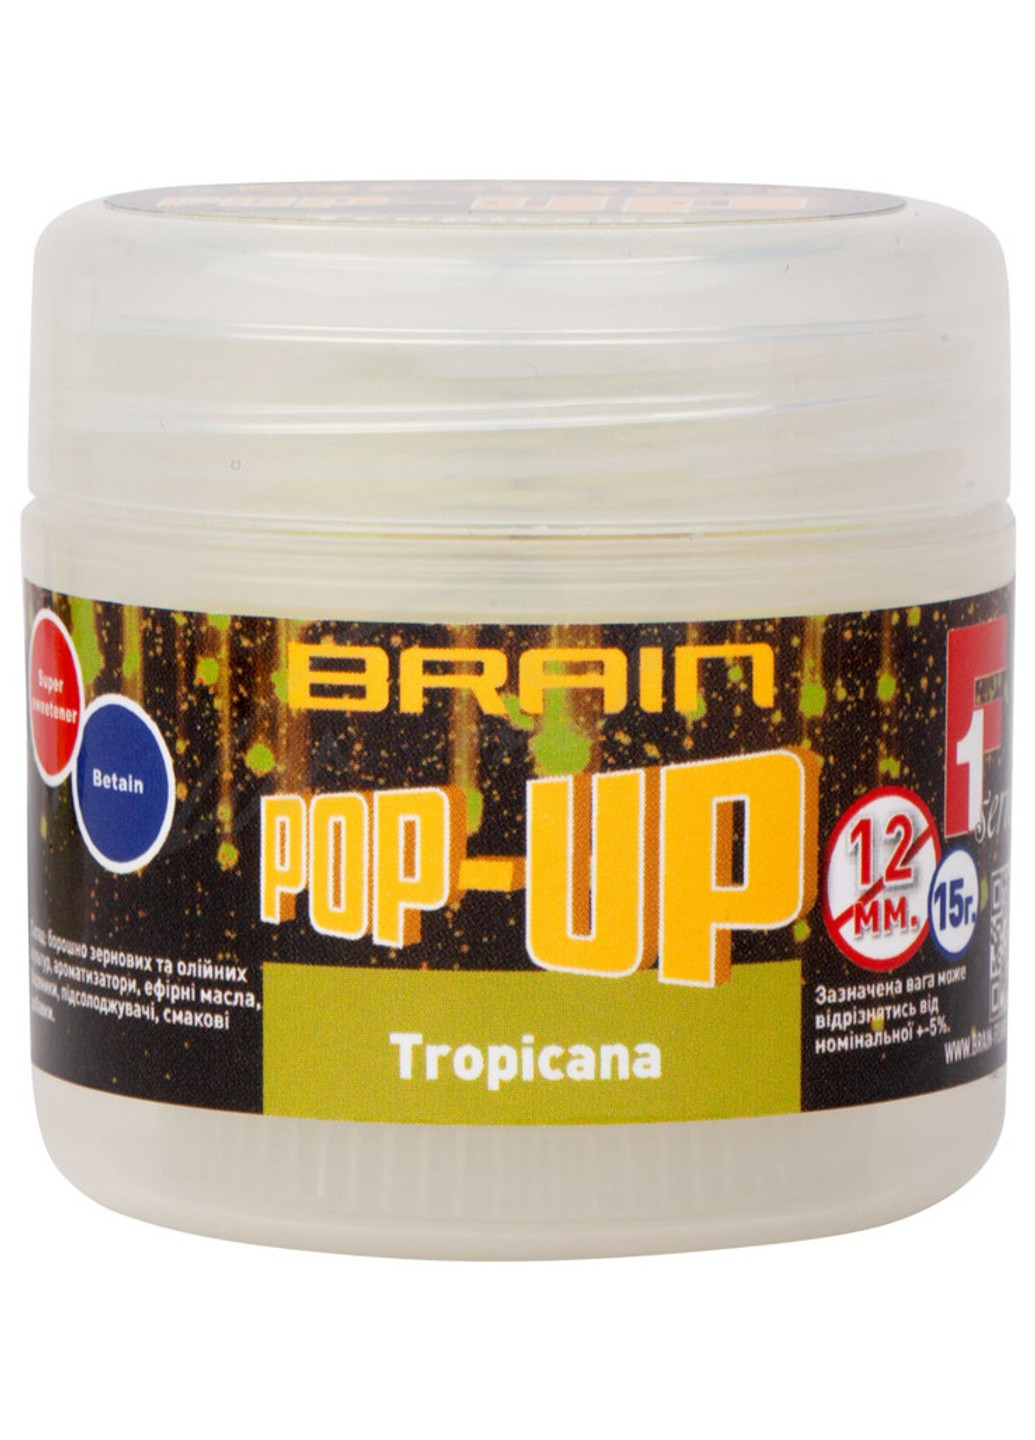 Бойли Pop-Up F1 Tropicana (манго) 12мм 15g Brain (252648636)